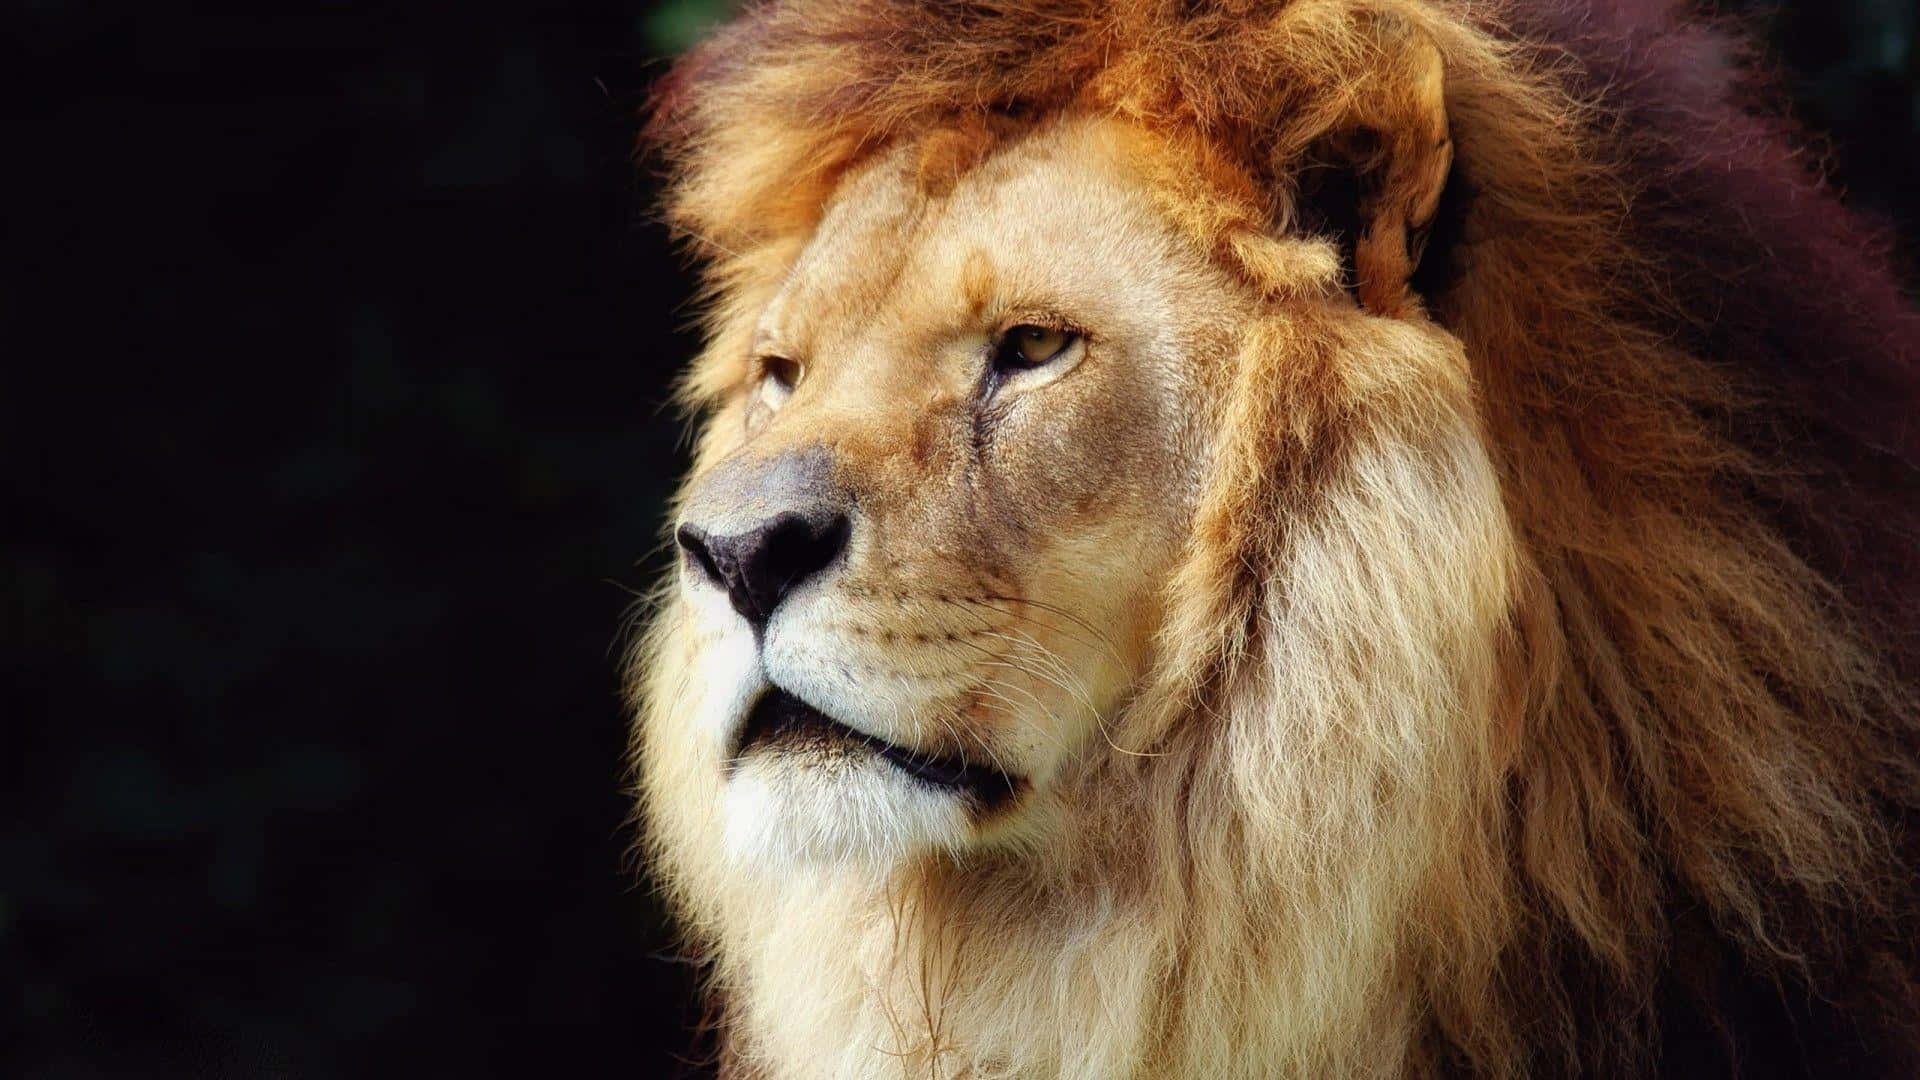 Imponerandevild Och Kraftfull Är Lejonansiktet Ett Ikoniskt Symbol För Mod, Styrka Och Ädla Egenskaper.